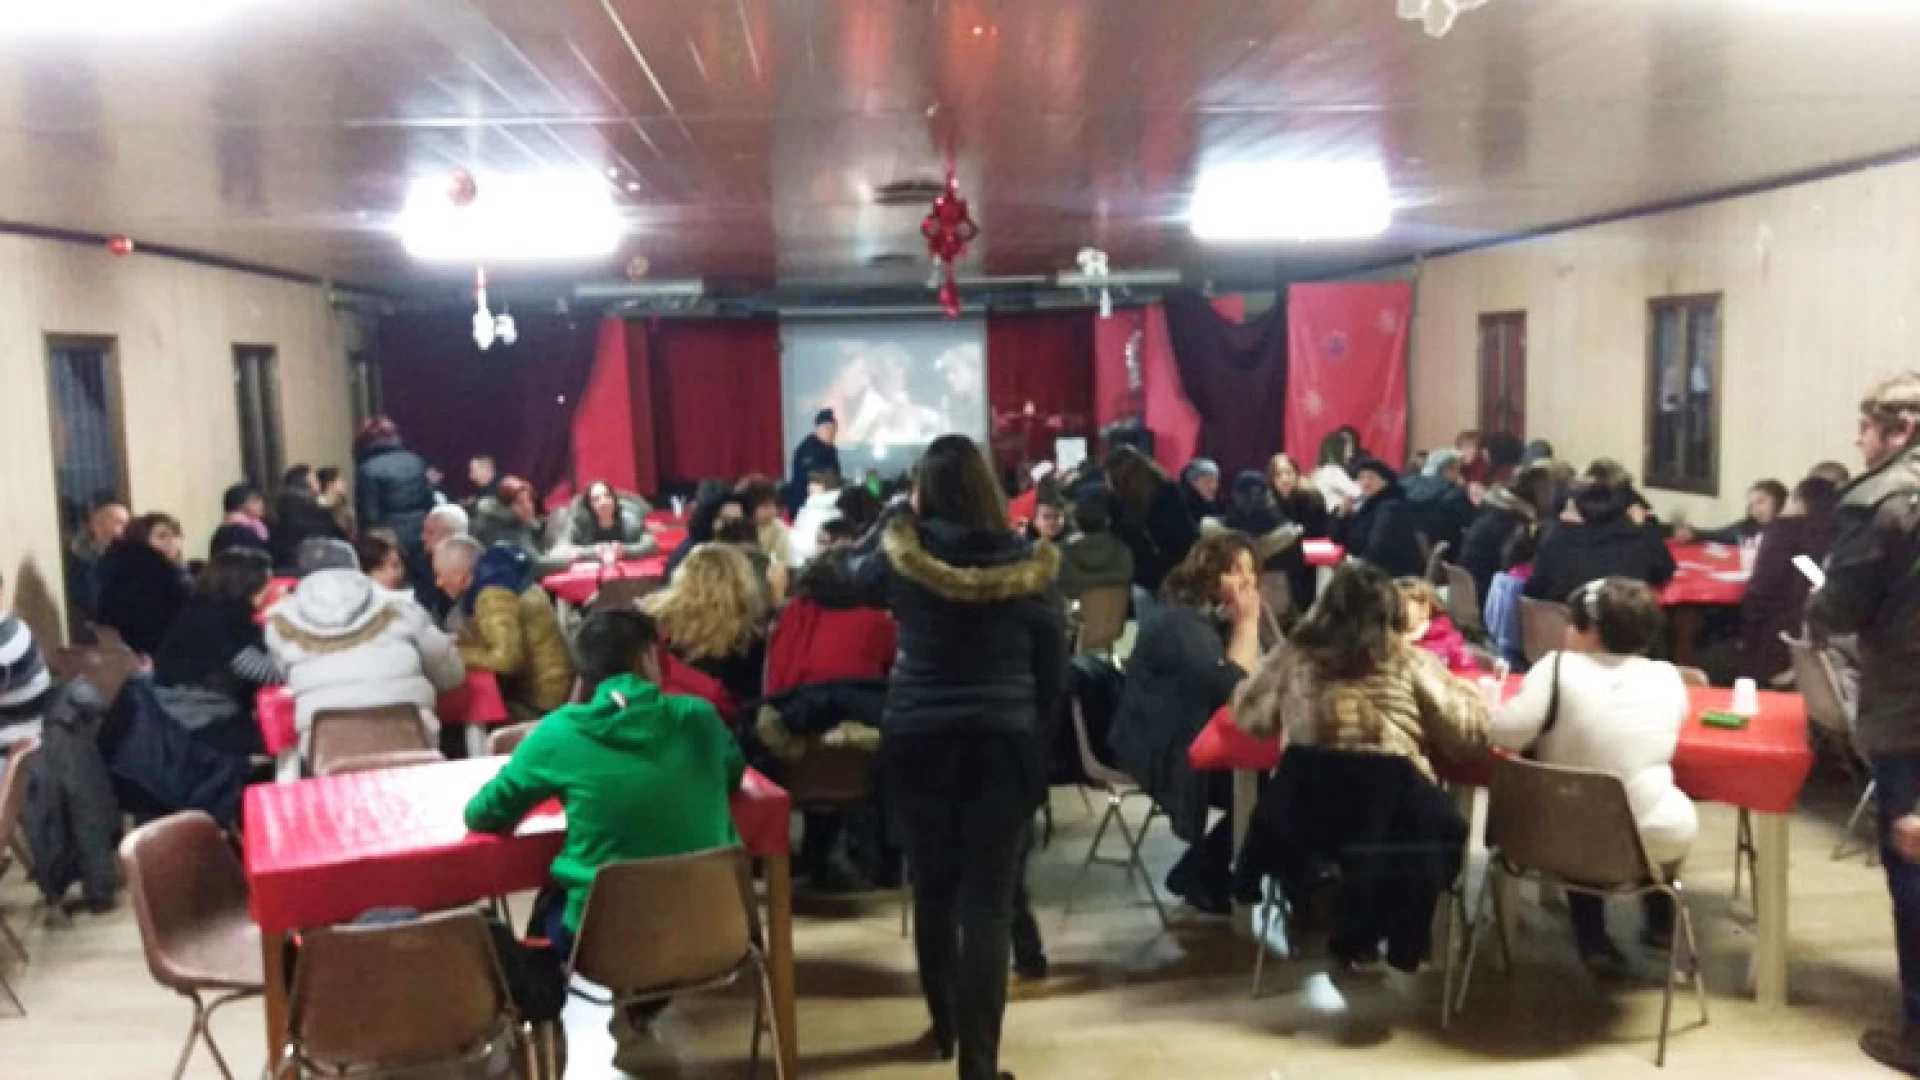 Colli a Volturno: al via gli eventi natalizi dell’Associazione socio-culturale “Forza Giovane”. Domenica 15 dicembre la Tombolata Alimentare.